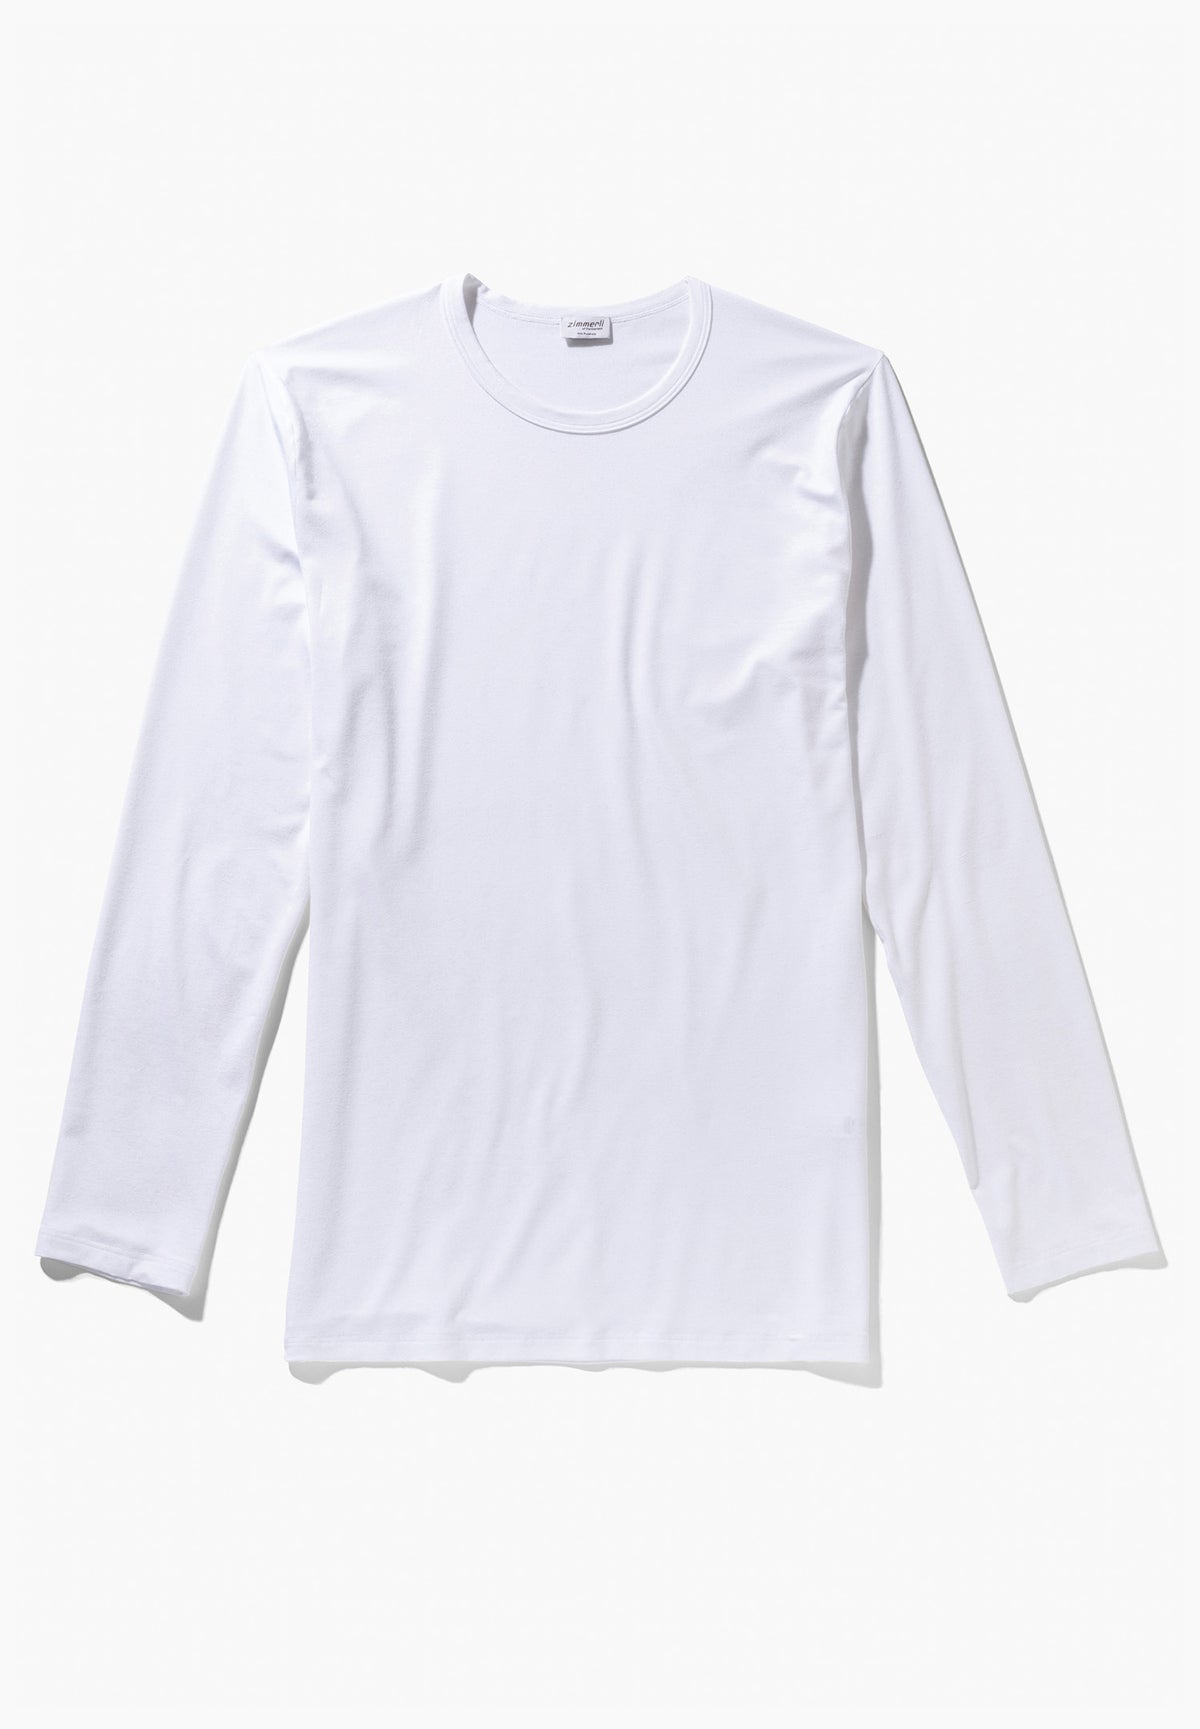 Pureness | T-Shirt langarm - white